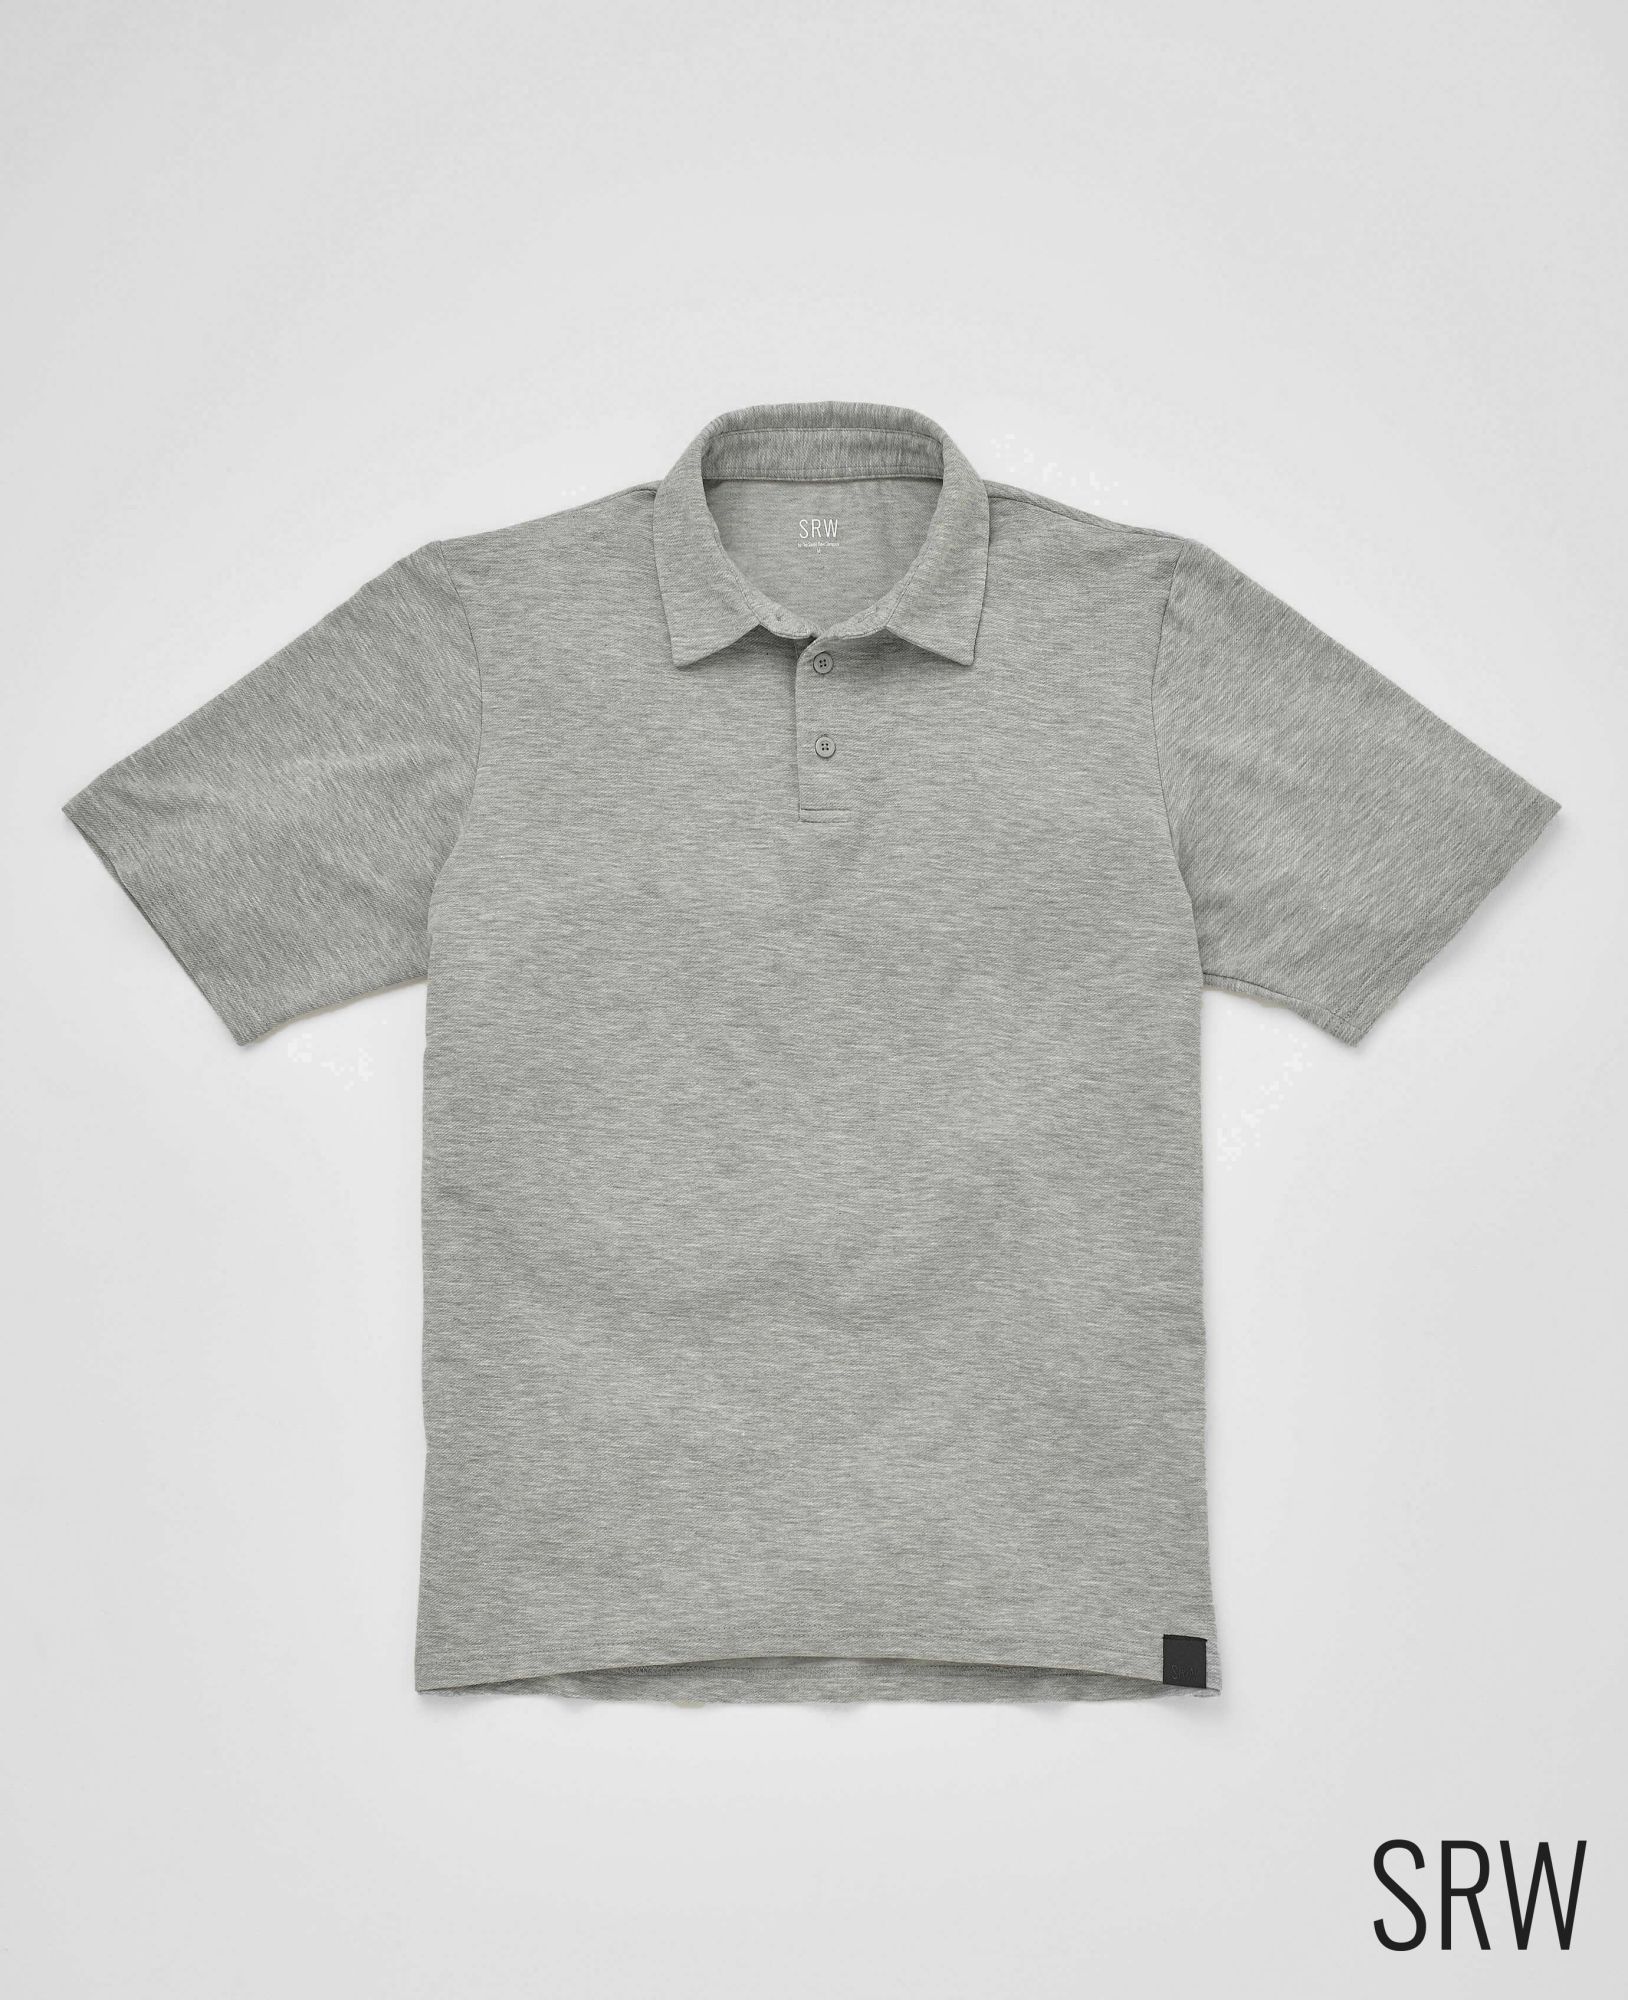 SRW Active Non-Iron Marl Grey Short Sleeve Polo Shirt XXXL